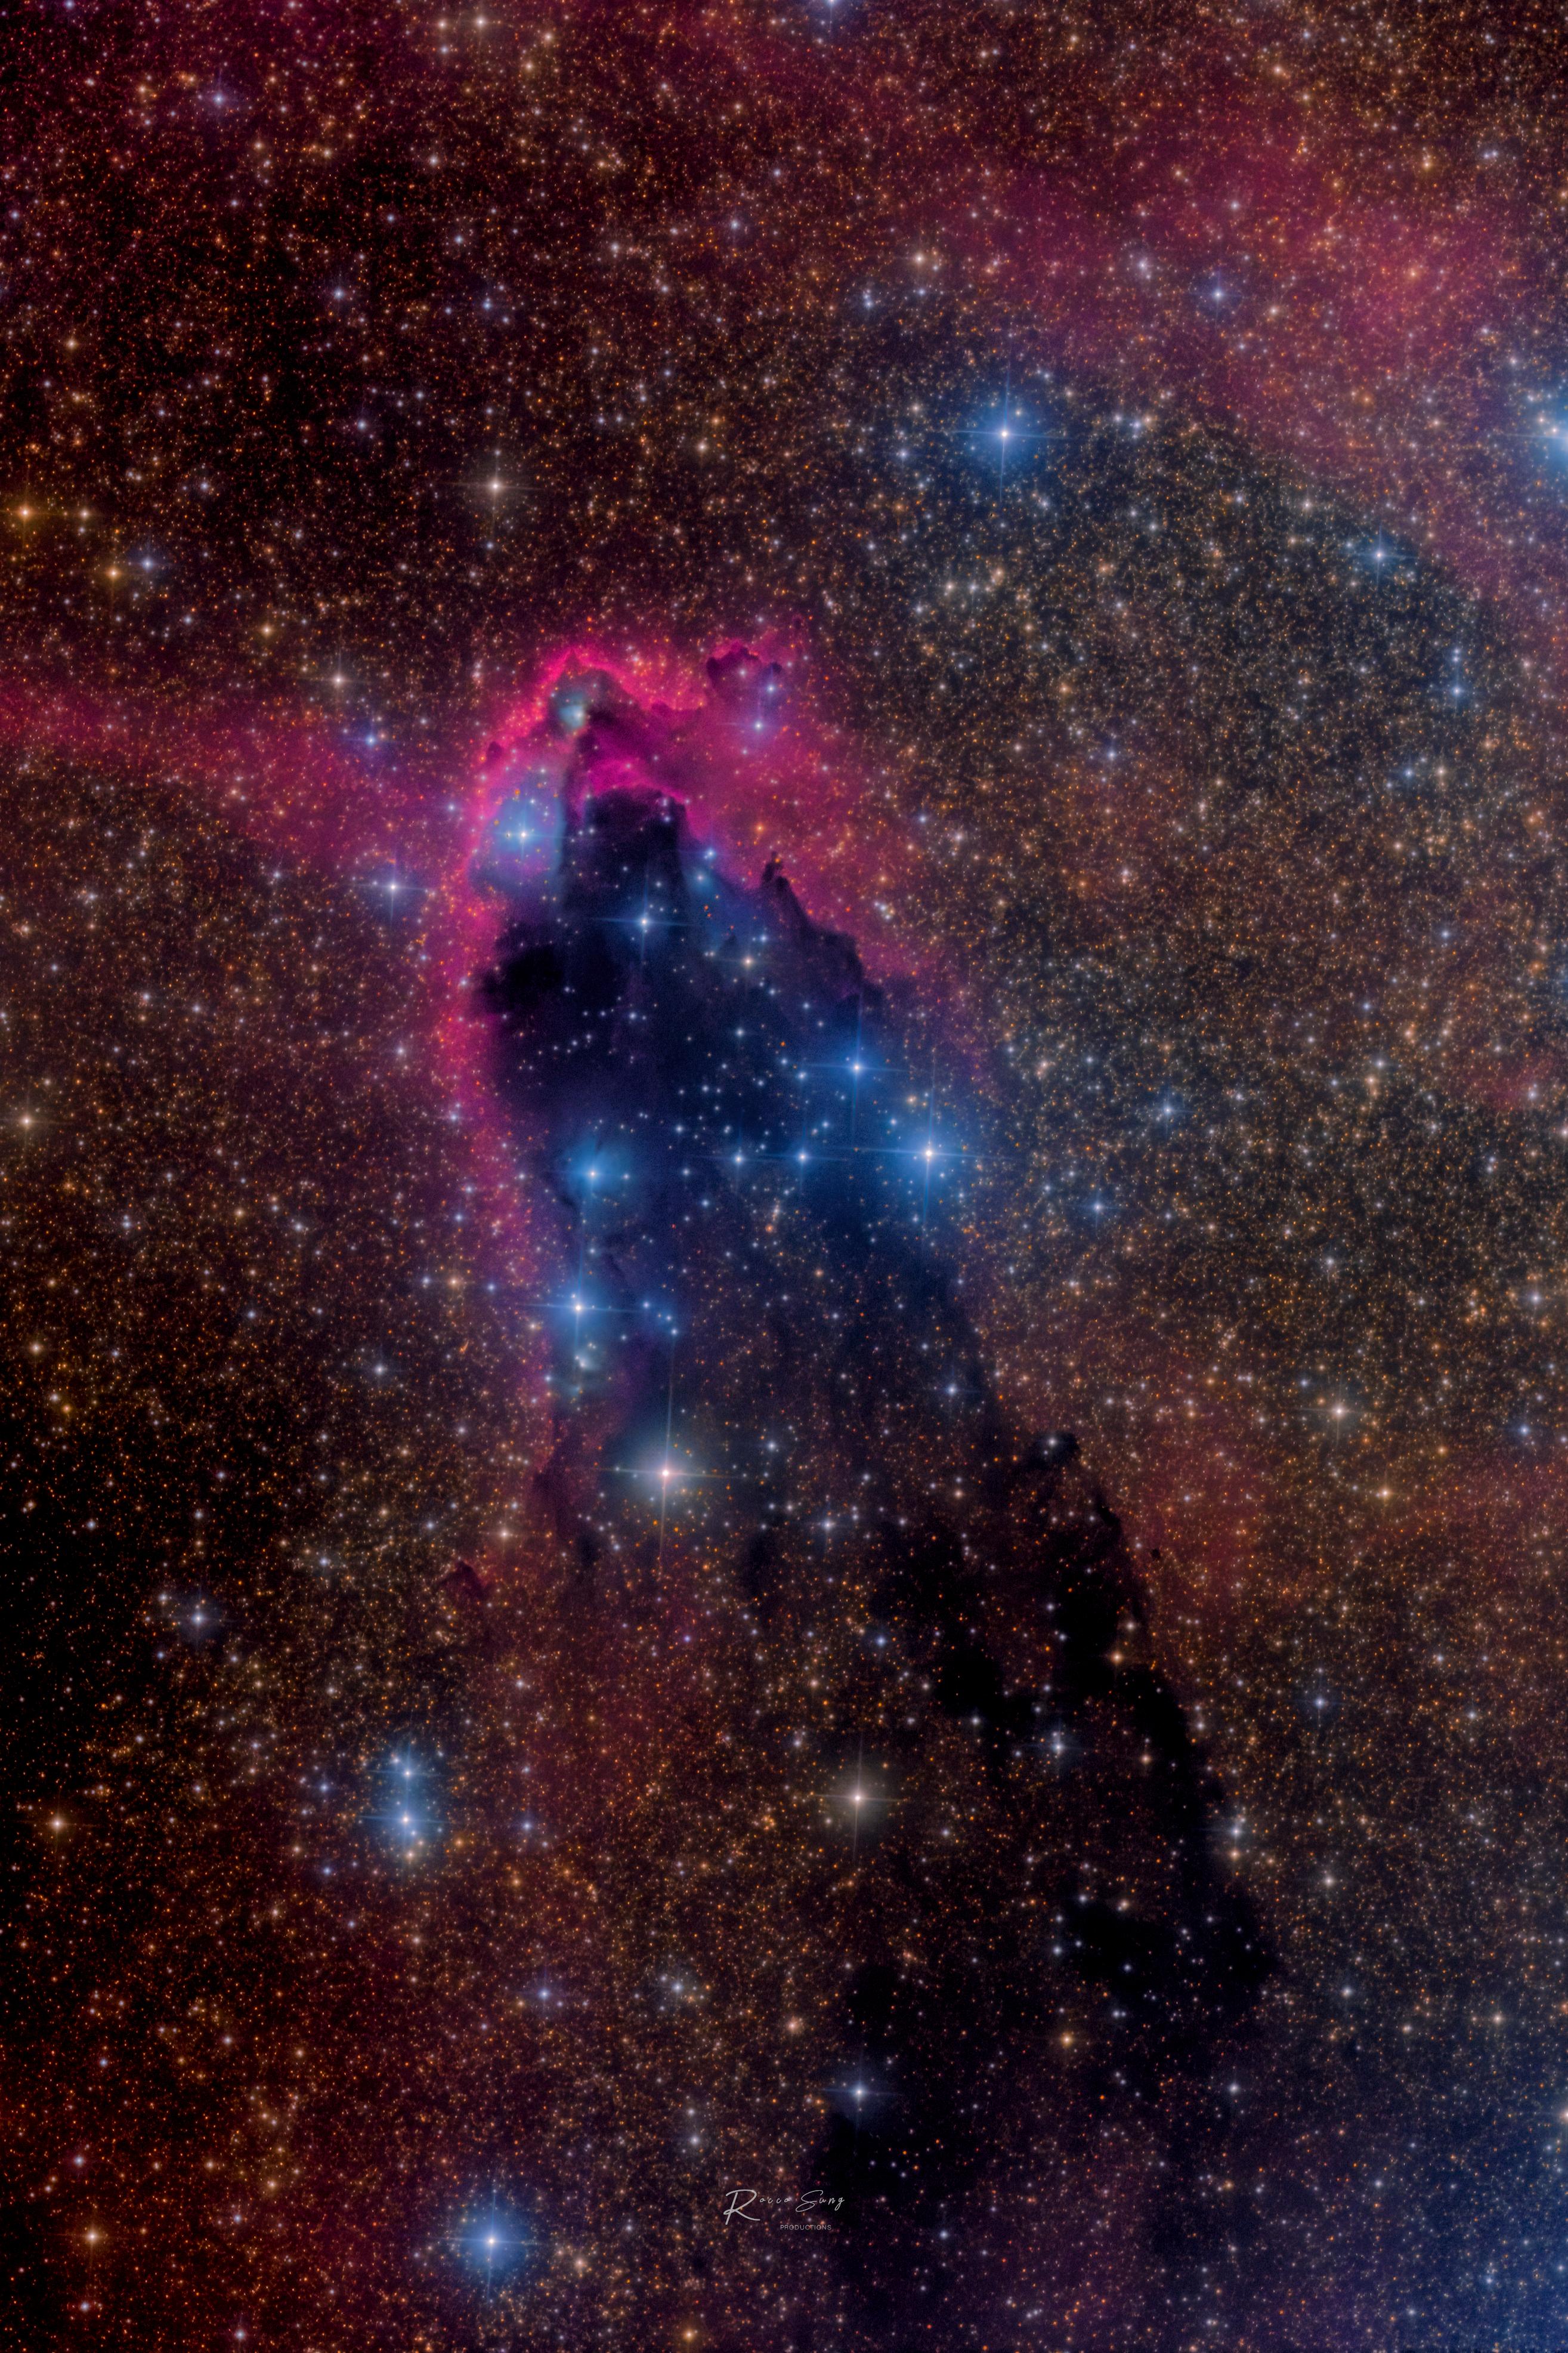 صورة مزدانة بالنجوم للفضاء العميق يظهر في وسطها امتداد داكن فيه نجوم زرقاء يحاذيها من الأعلى غازات ذات وهج محمرّ.